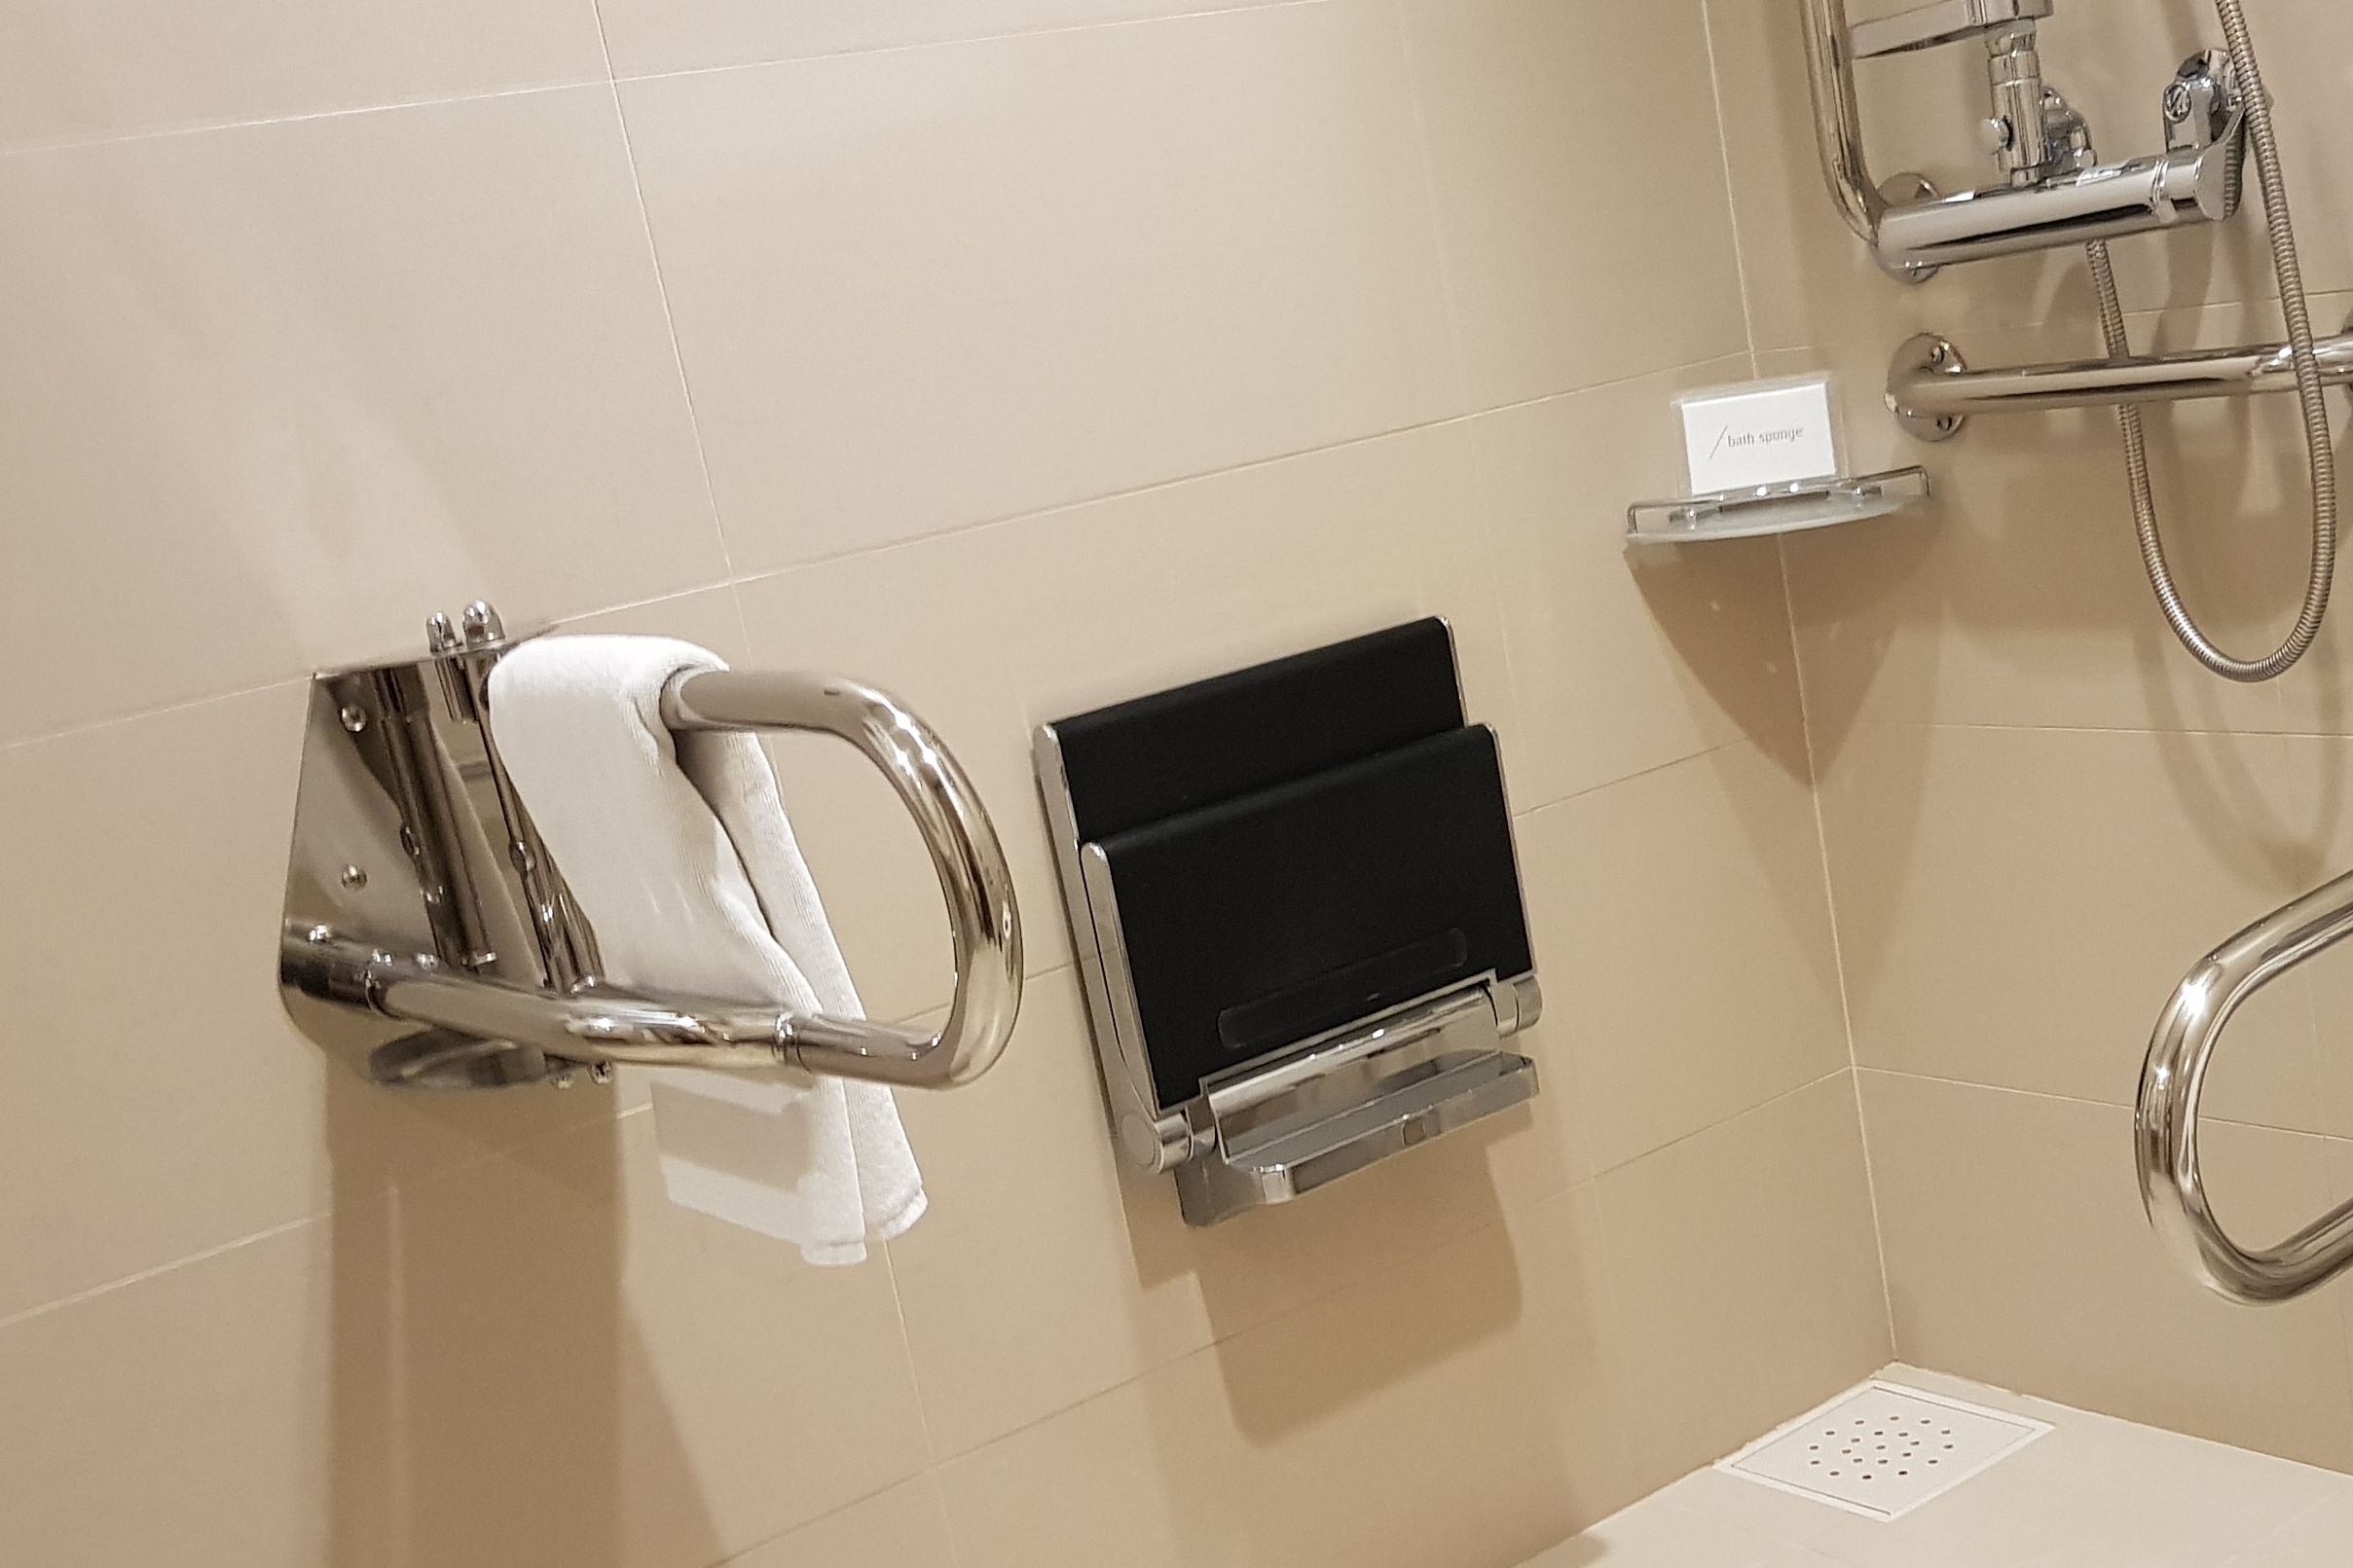 장애인 객실 화장실0 : 객실에 설치된 벽걸이형 사워의자